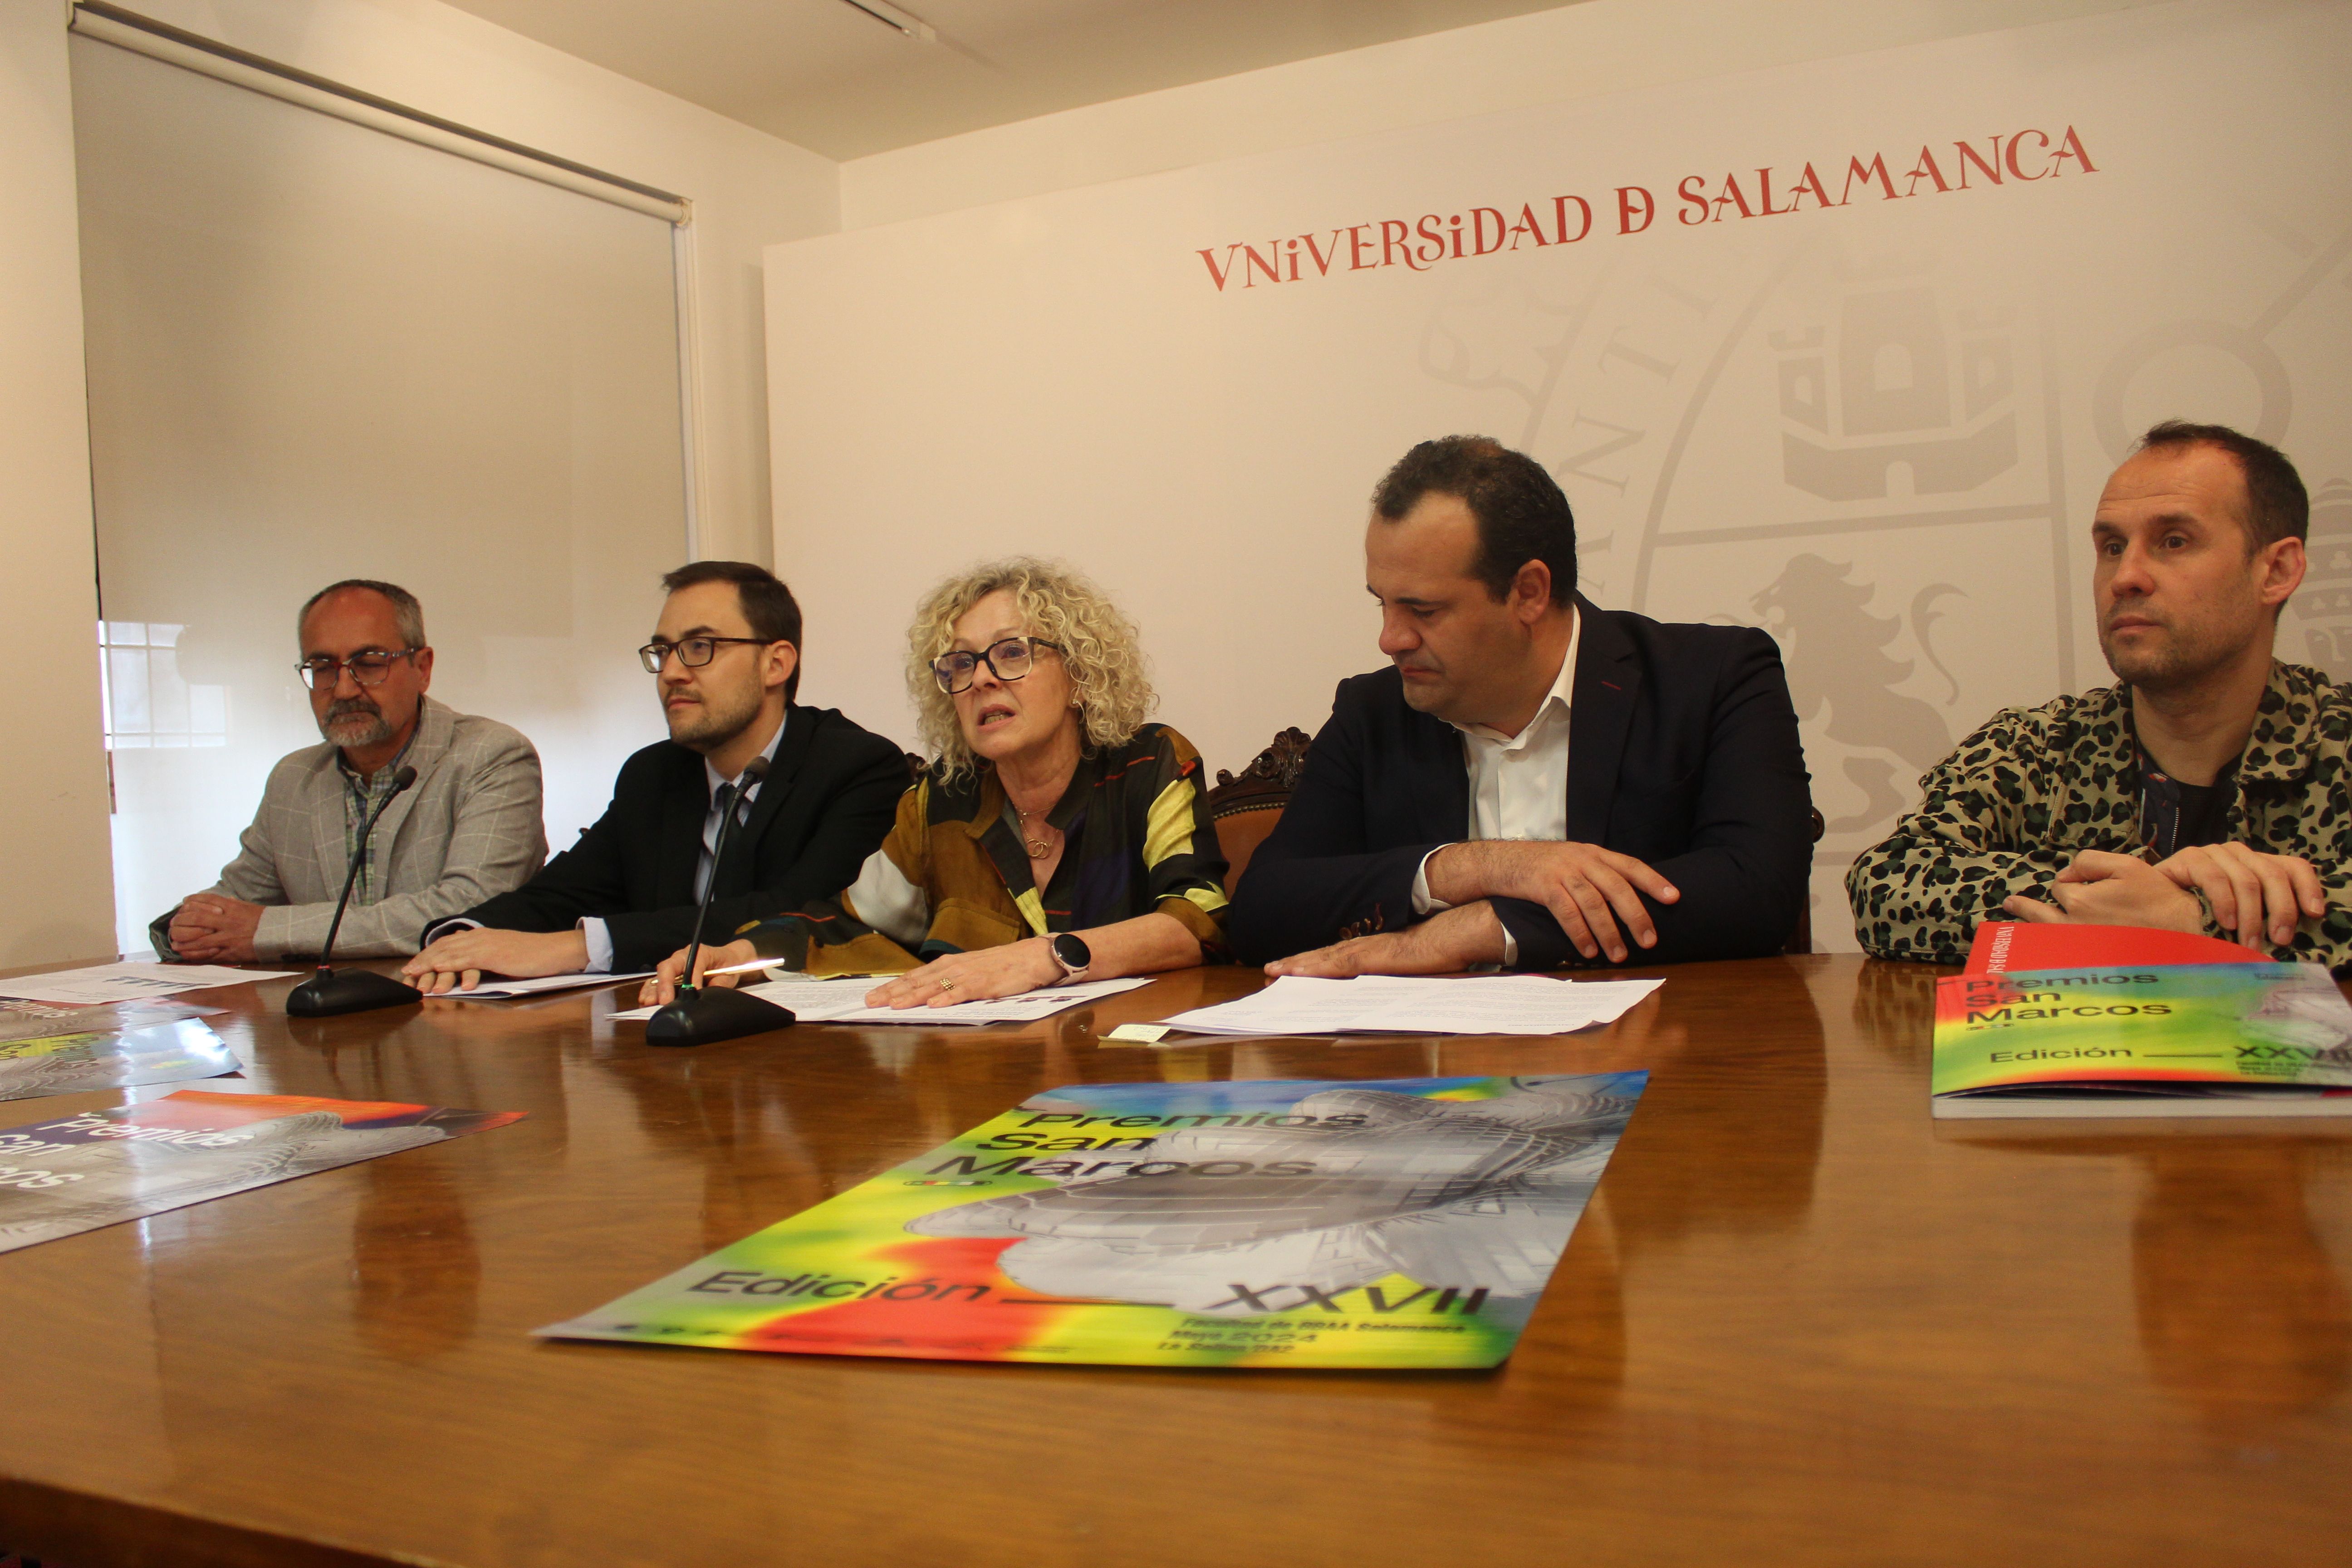  Presentación de la XXVII edición de los Premios San Marcos de la Universidad de Salamanca.